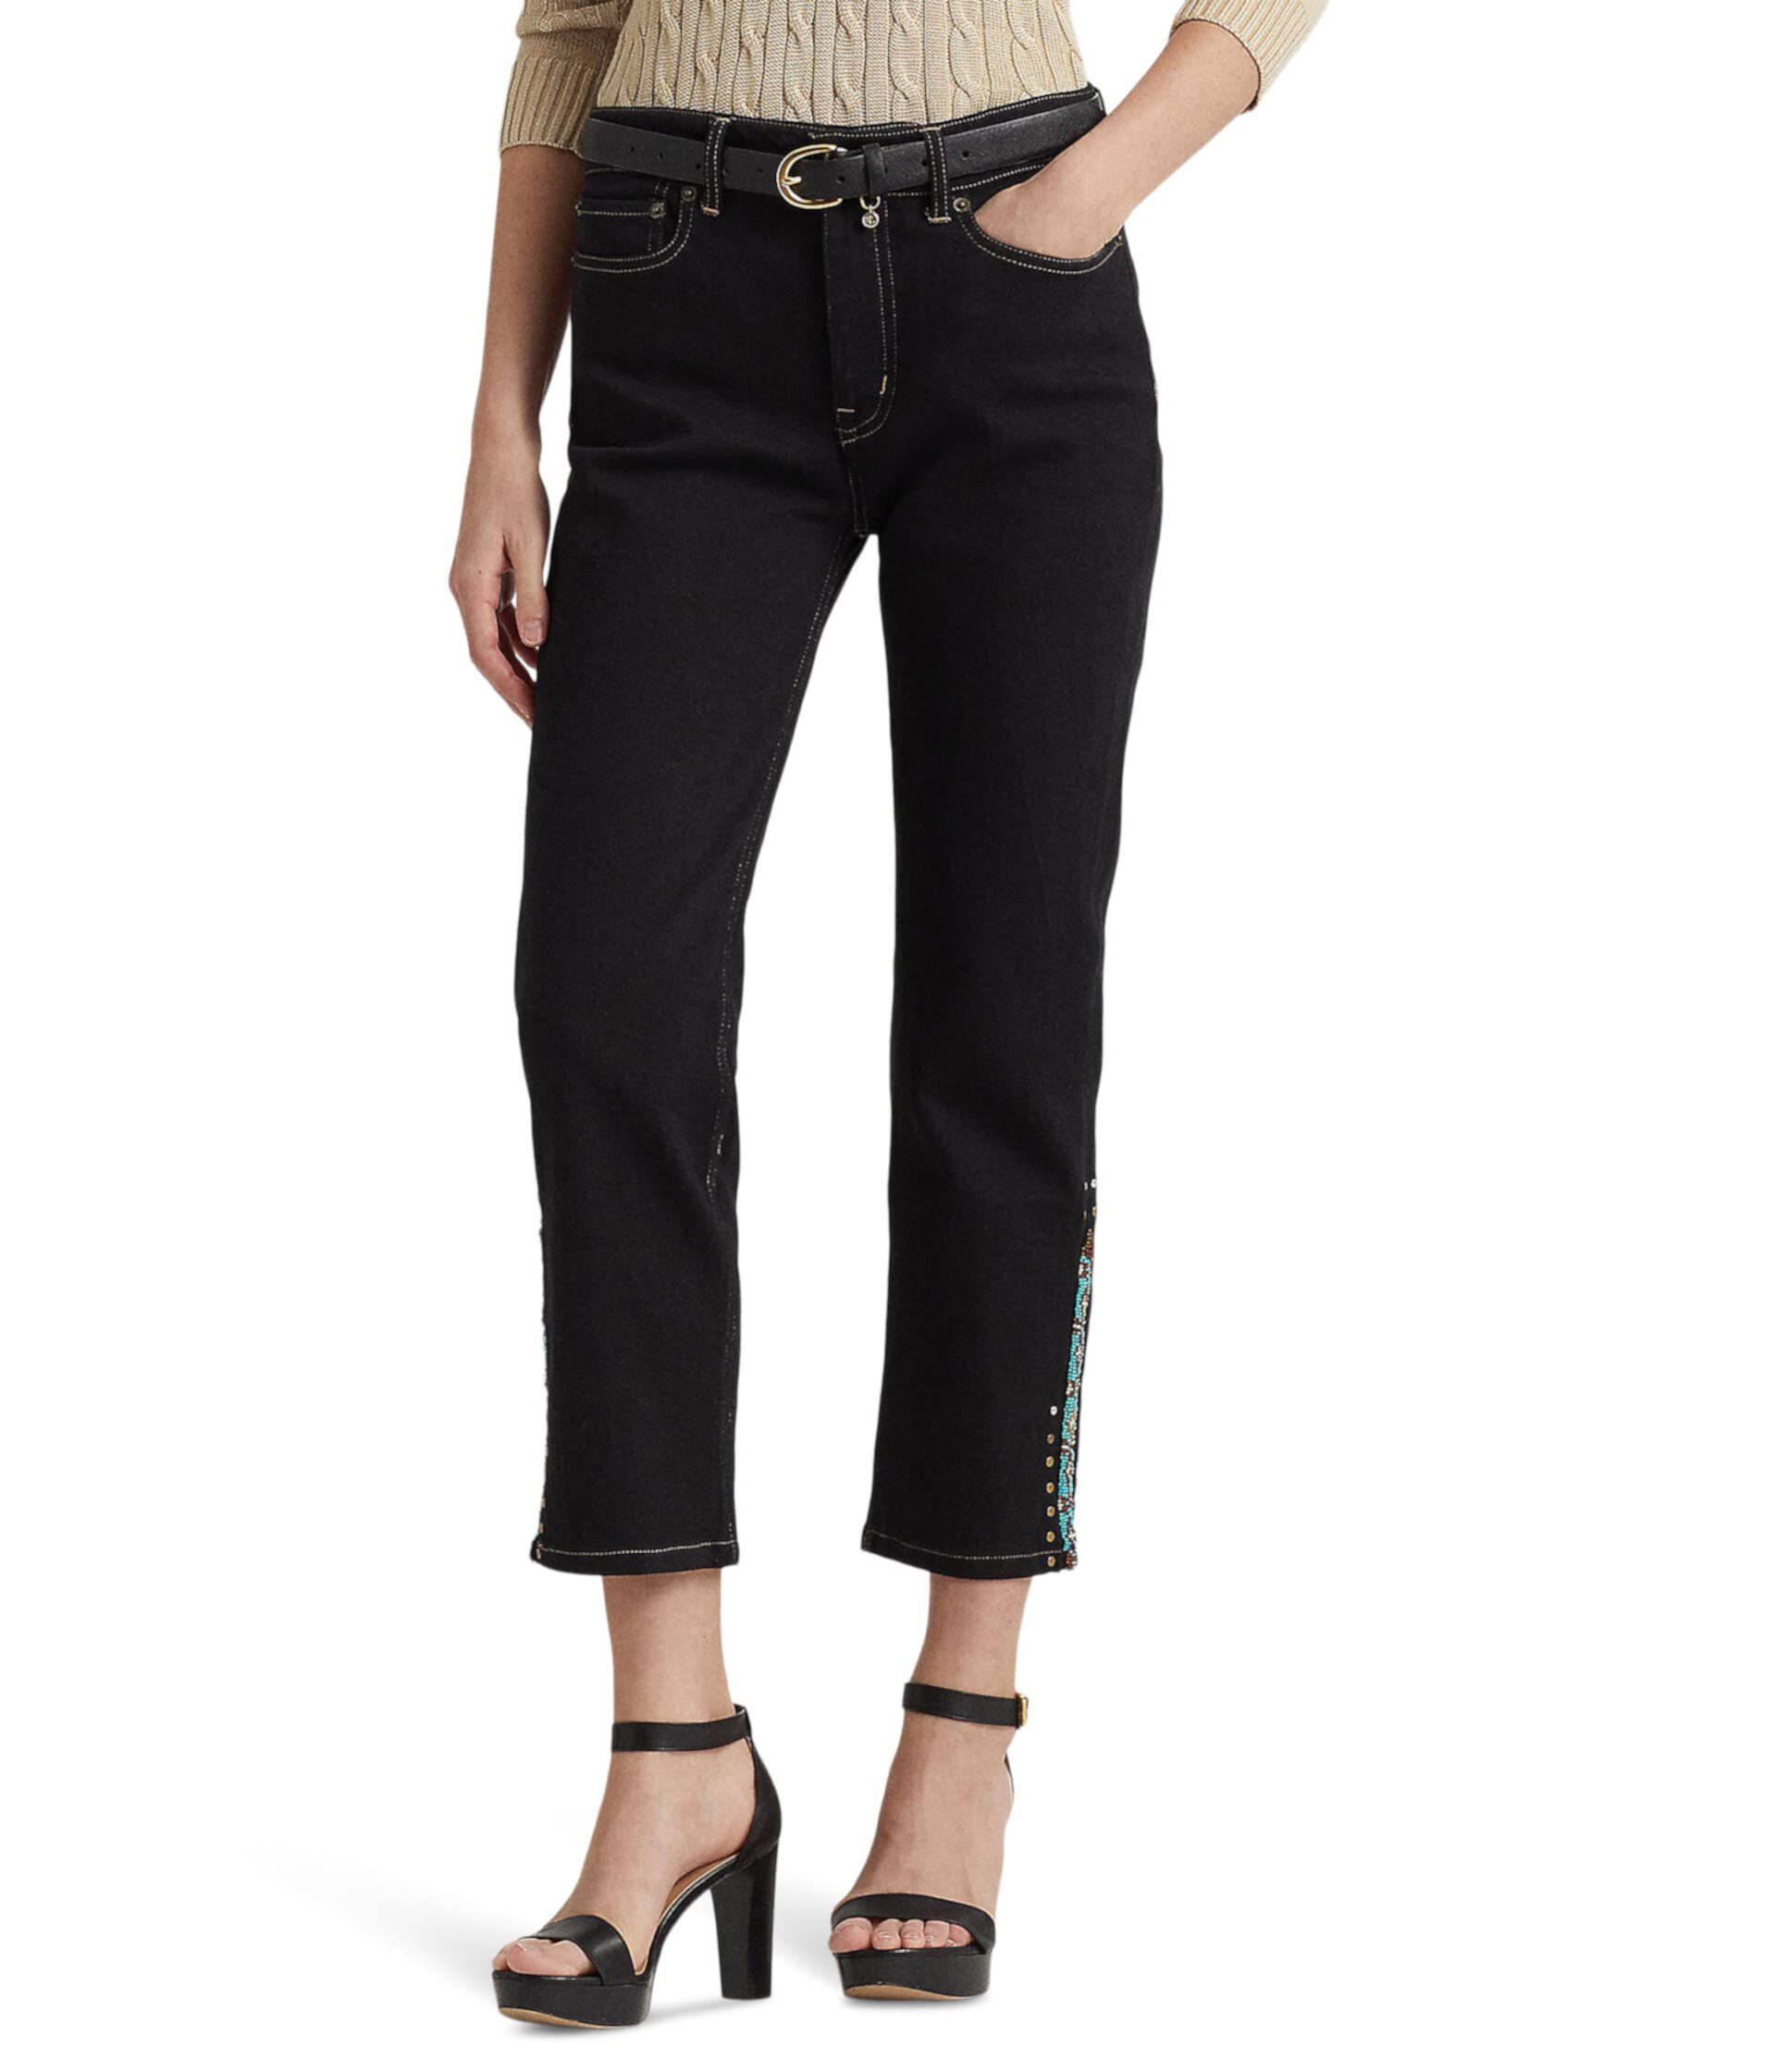 Джинсы с бисером на высокой талии линии прямых кроп-джинсов LAUREN Ralph Lauren в черном оттенке Rinse Wash LAUREN Ralph Lauren